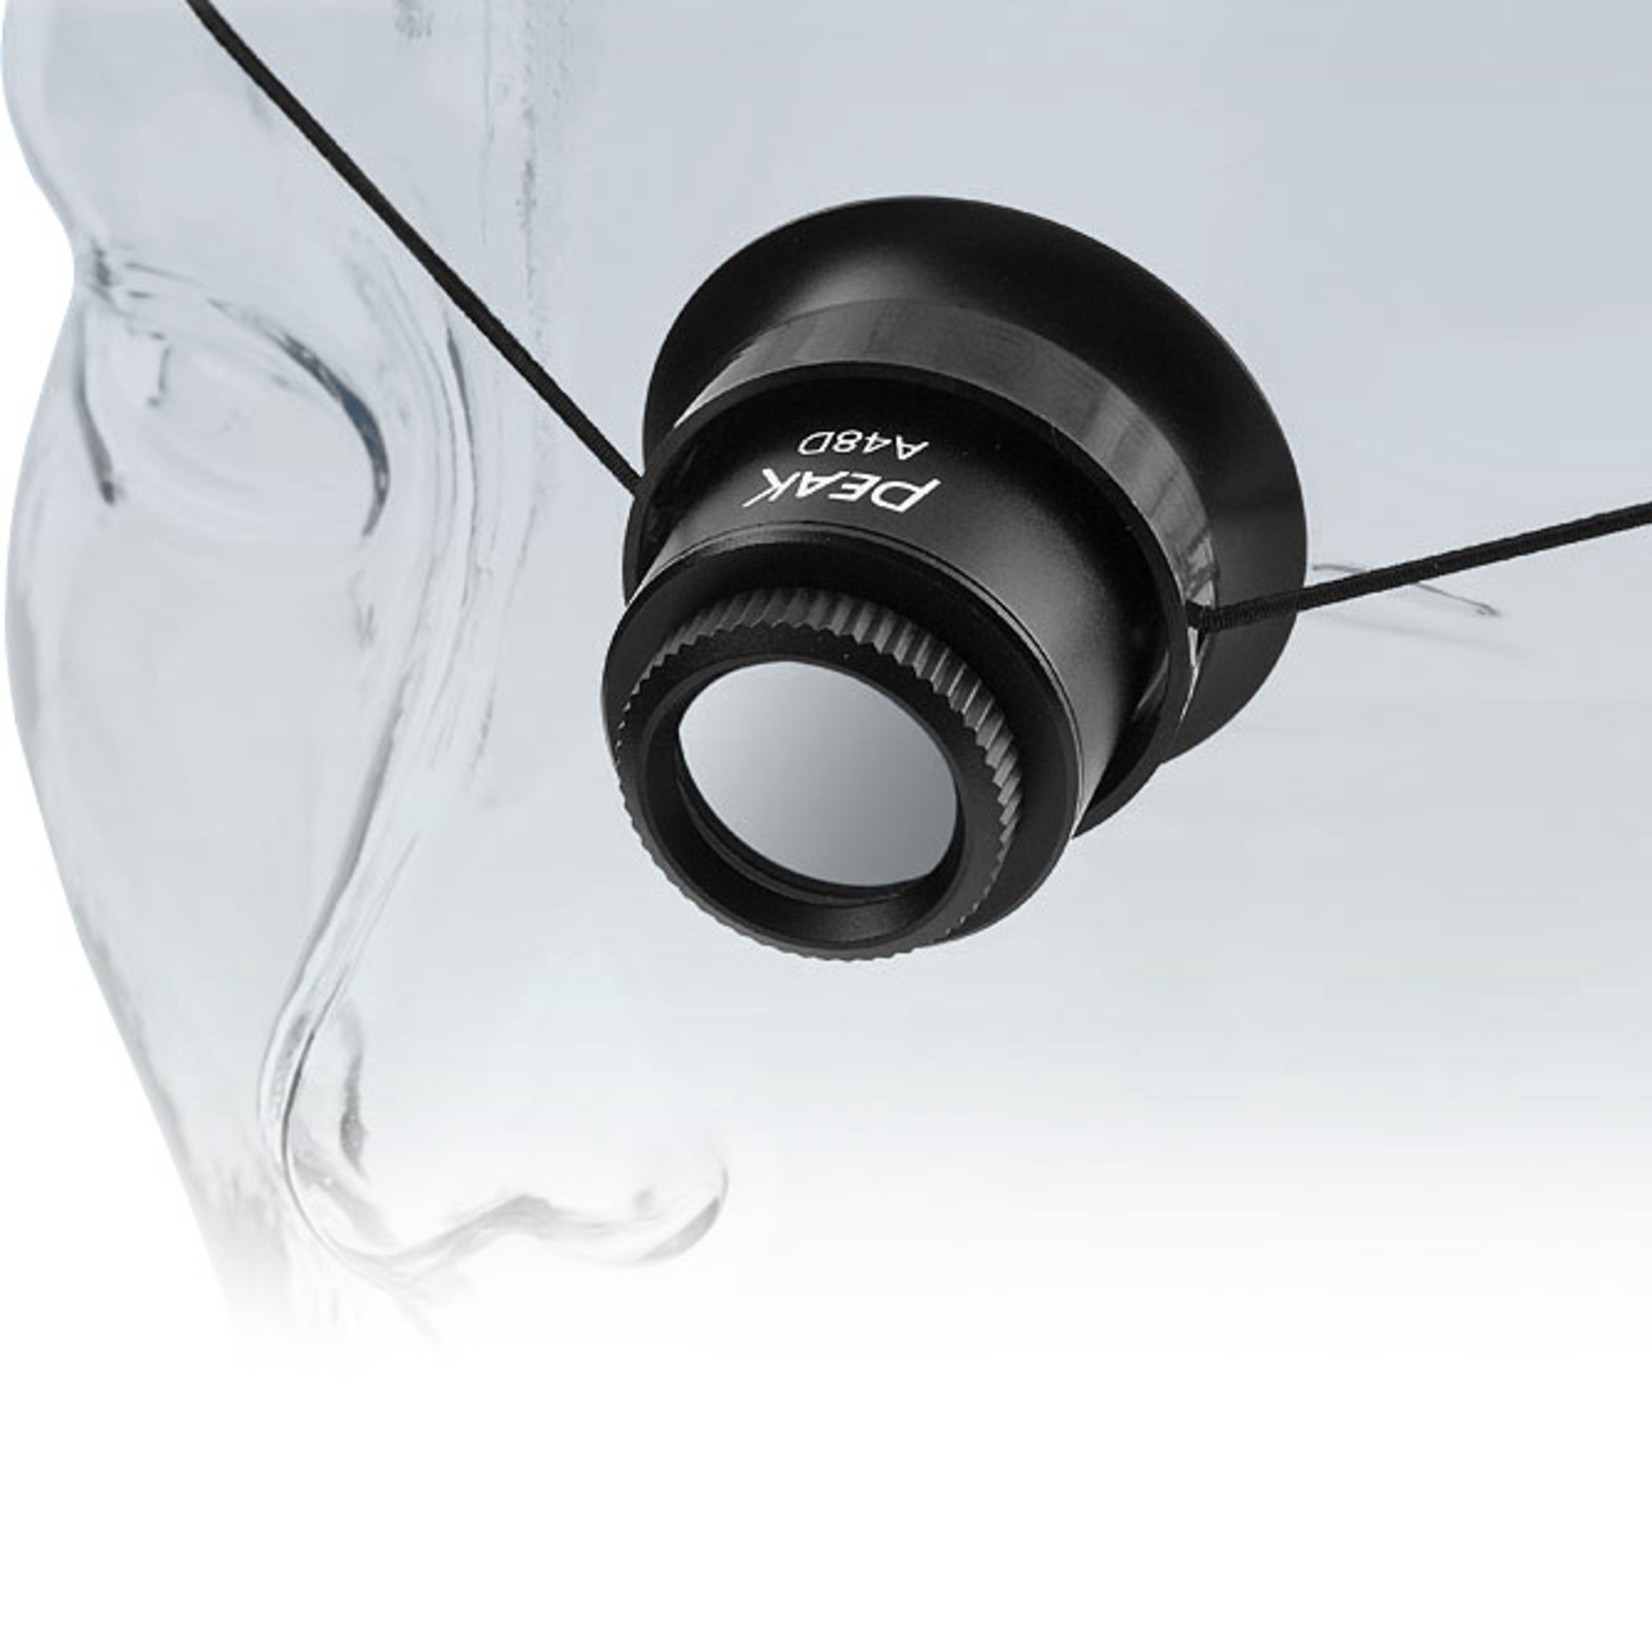 PEAK Watchmaker's magnifier 6.7x